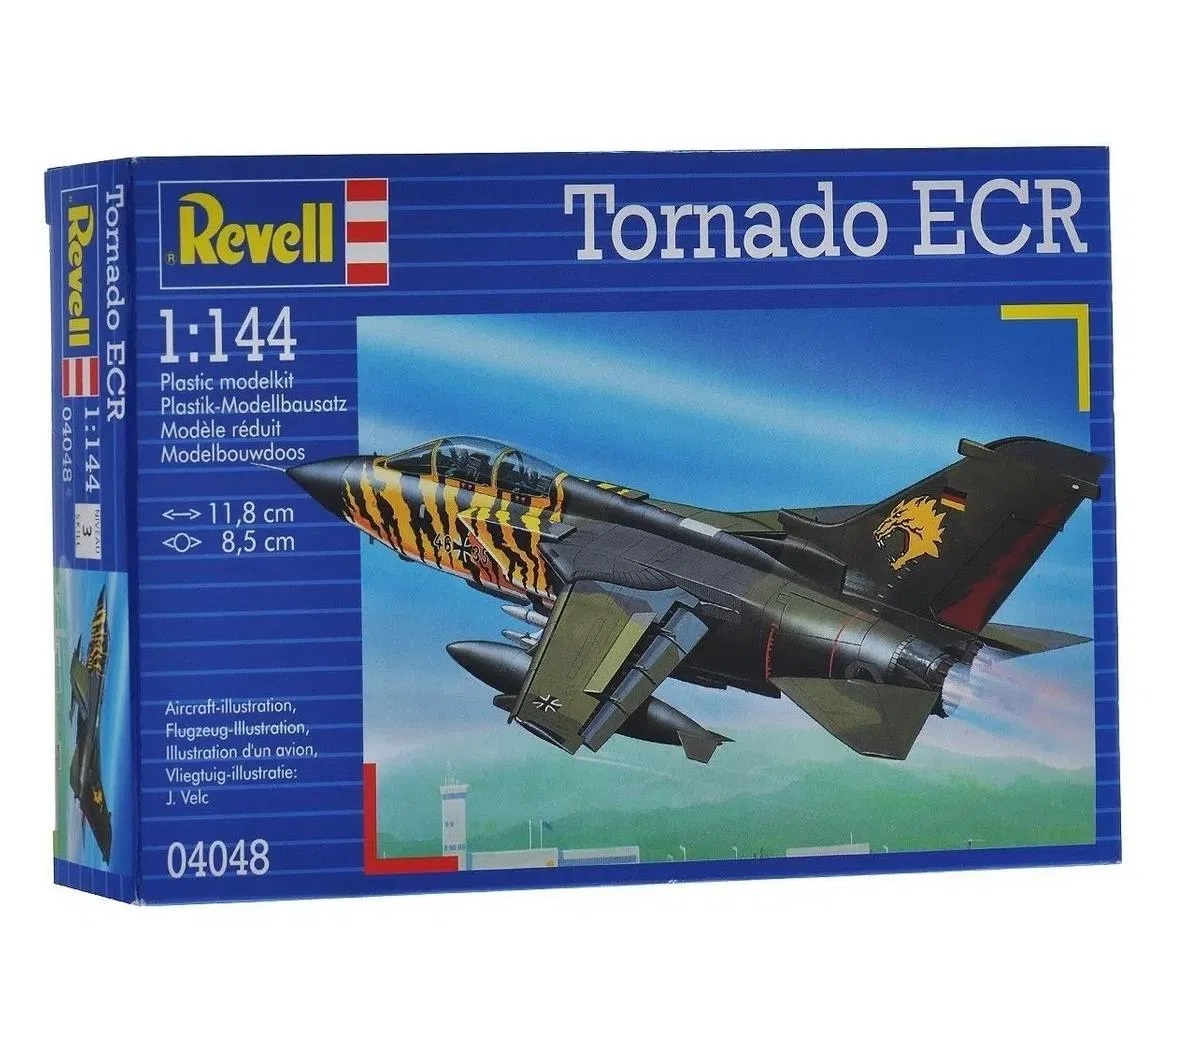 Revell Model Kit Tornado ECR Scale 1:144